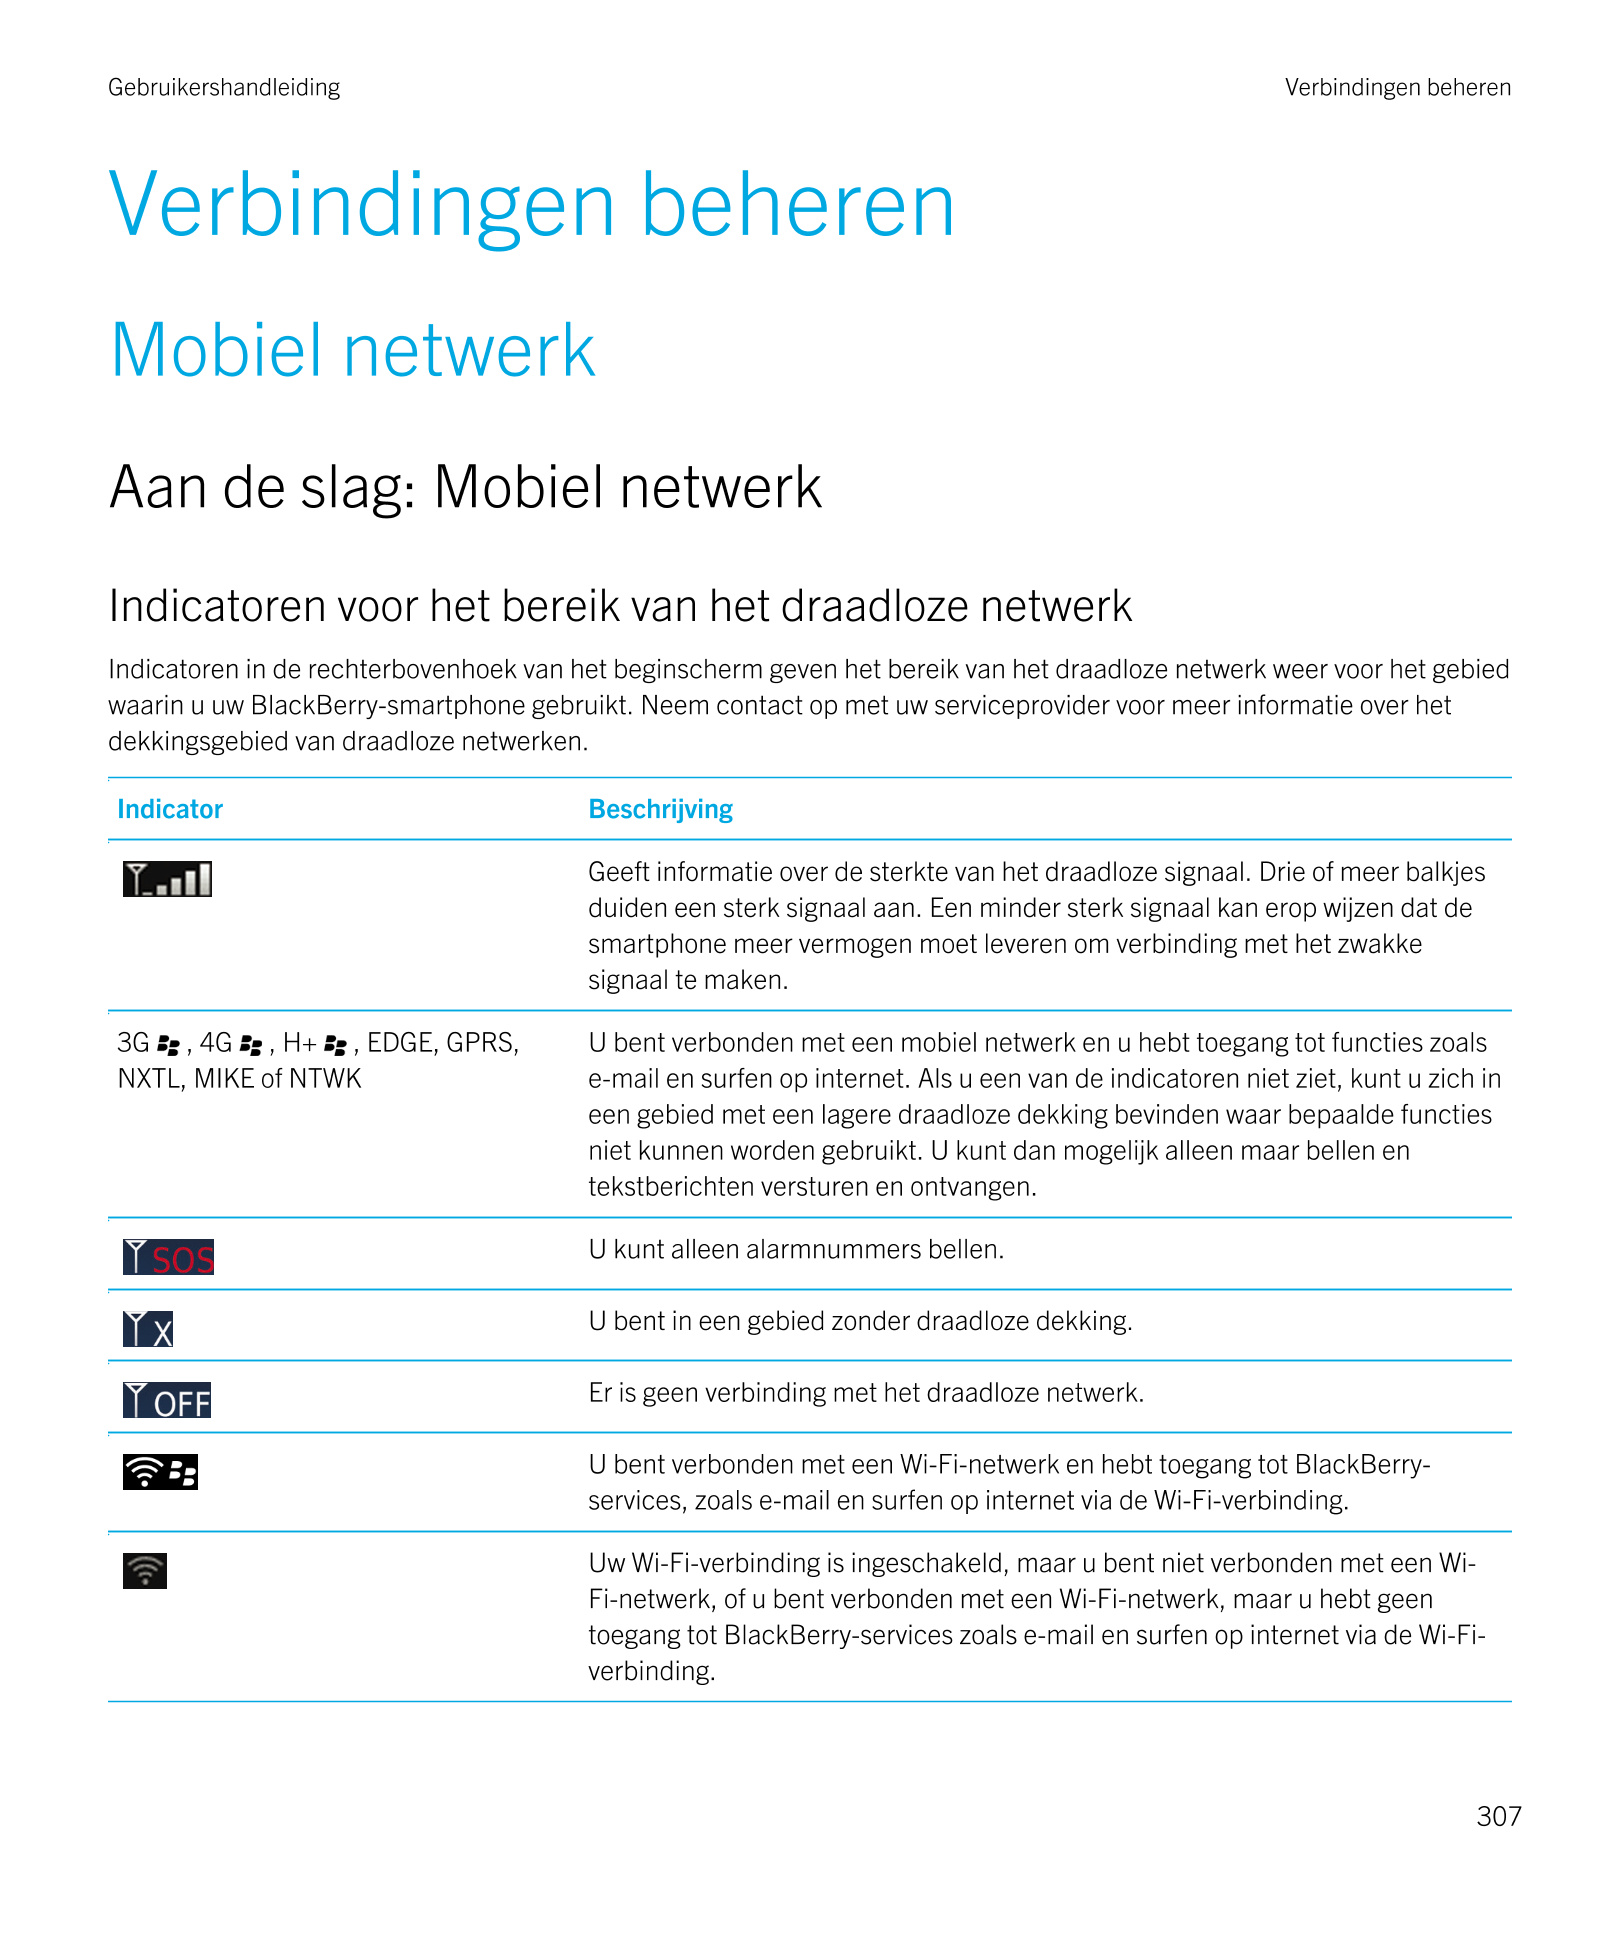 Gebruikershandleiding Verbindingen beheren
Verbindingen beheren
Mobiel netwerk
Aan de slag: Mobiel netwerk
Indicatoren voor het 